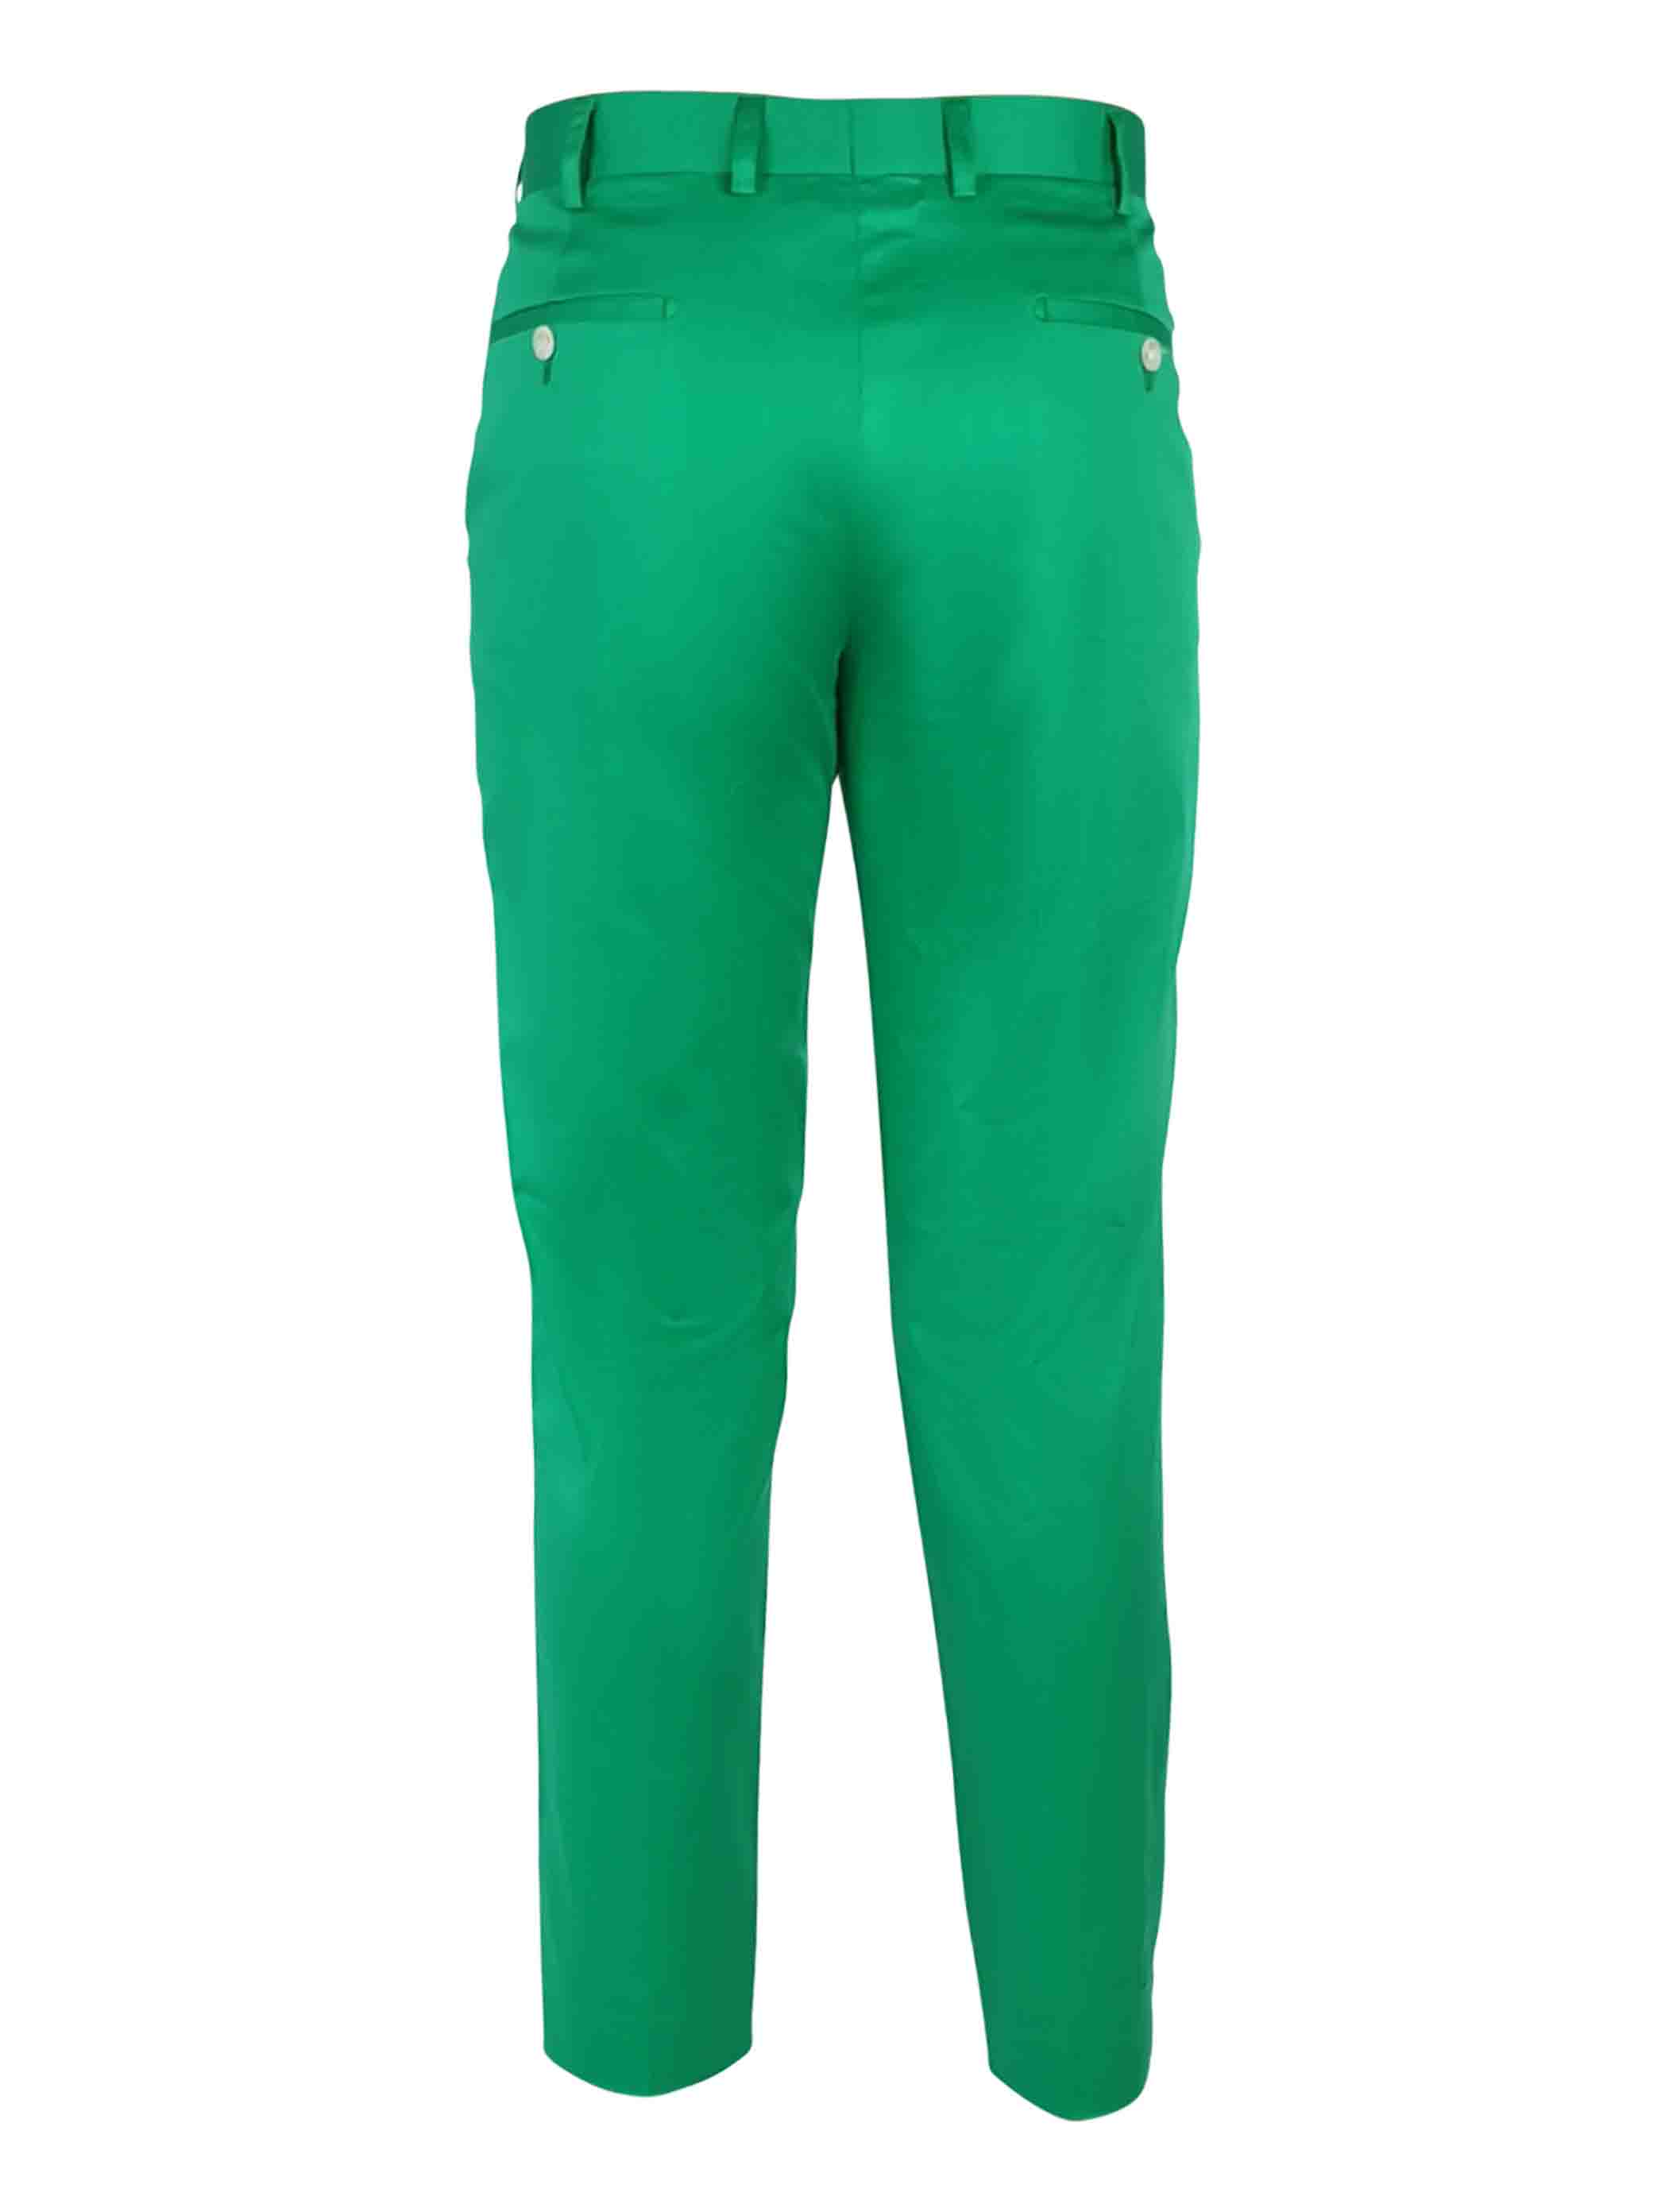 Men's Custom Chino - Green - Uniform Edit